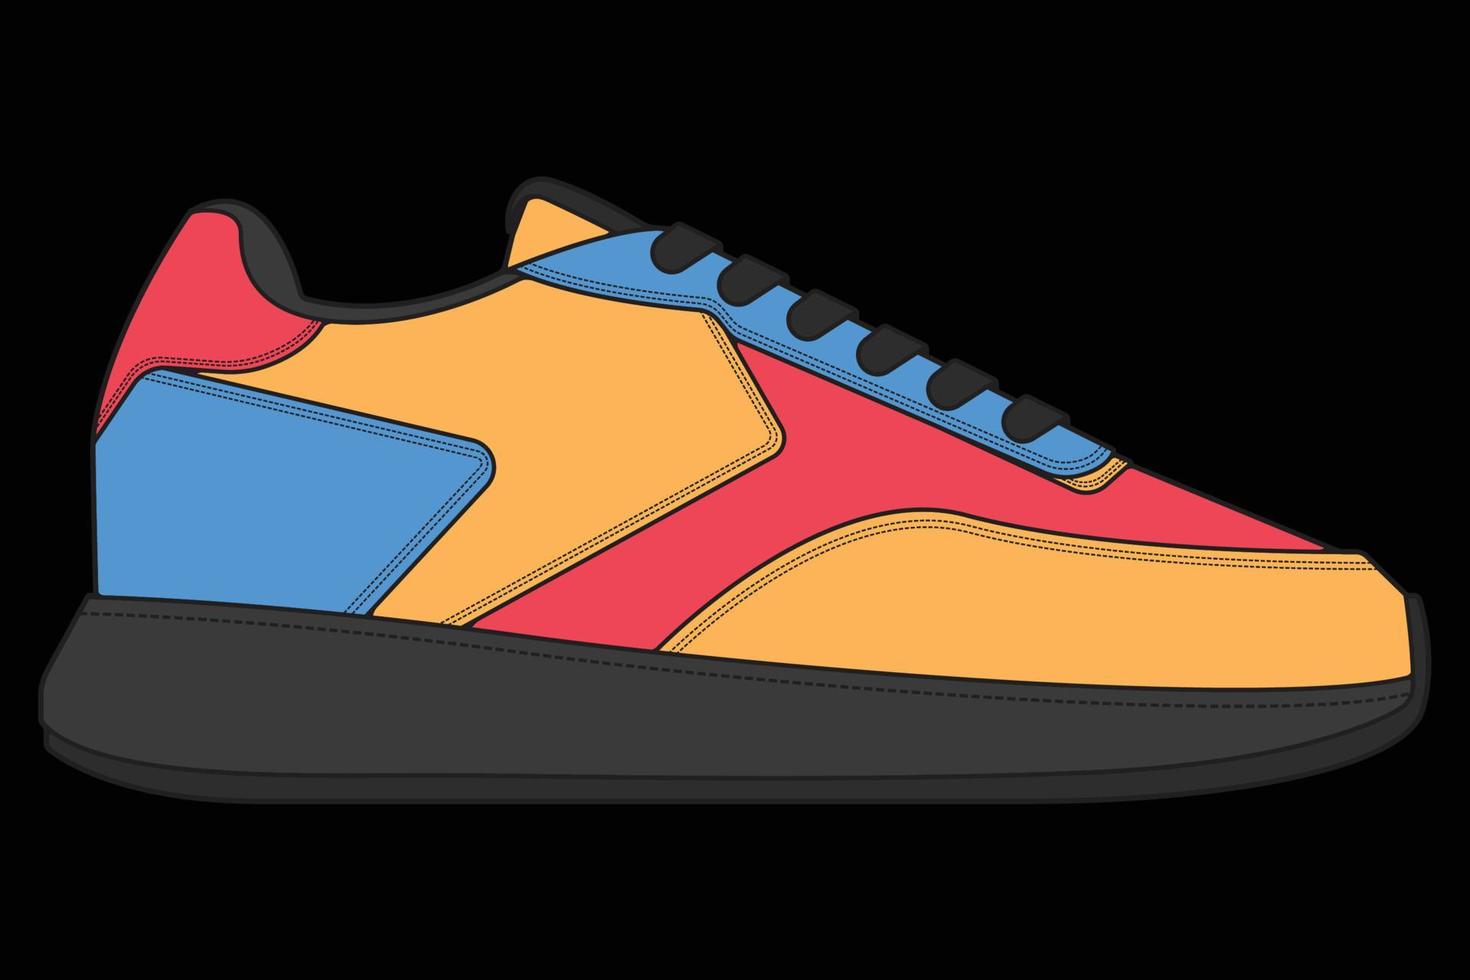 vector sneakers schoenen voor opleiding, hardloopschoen vectorillustratie. sportschoenen kleur vol.